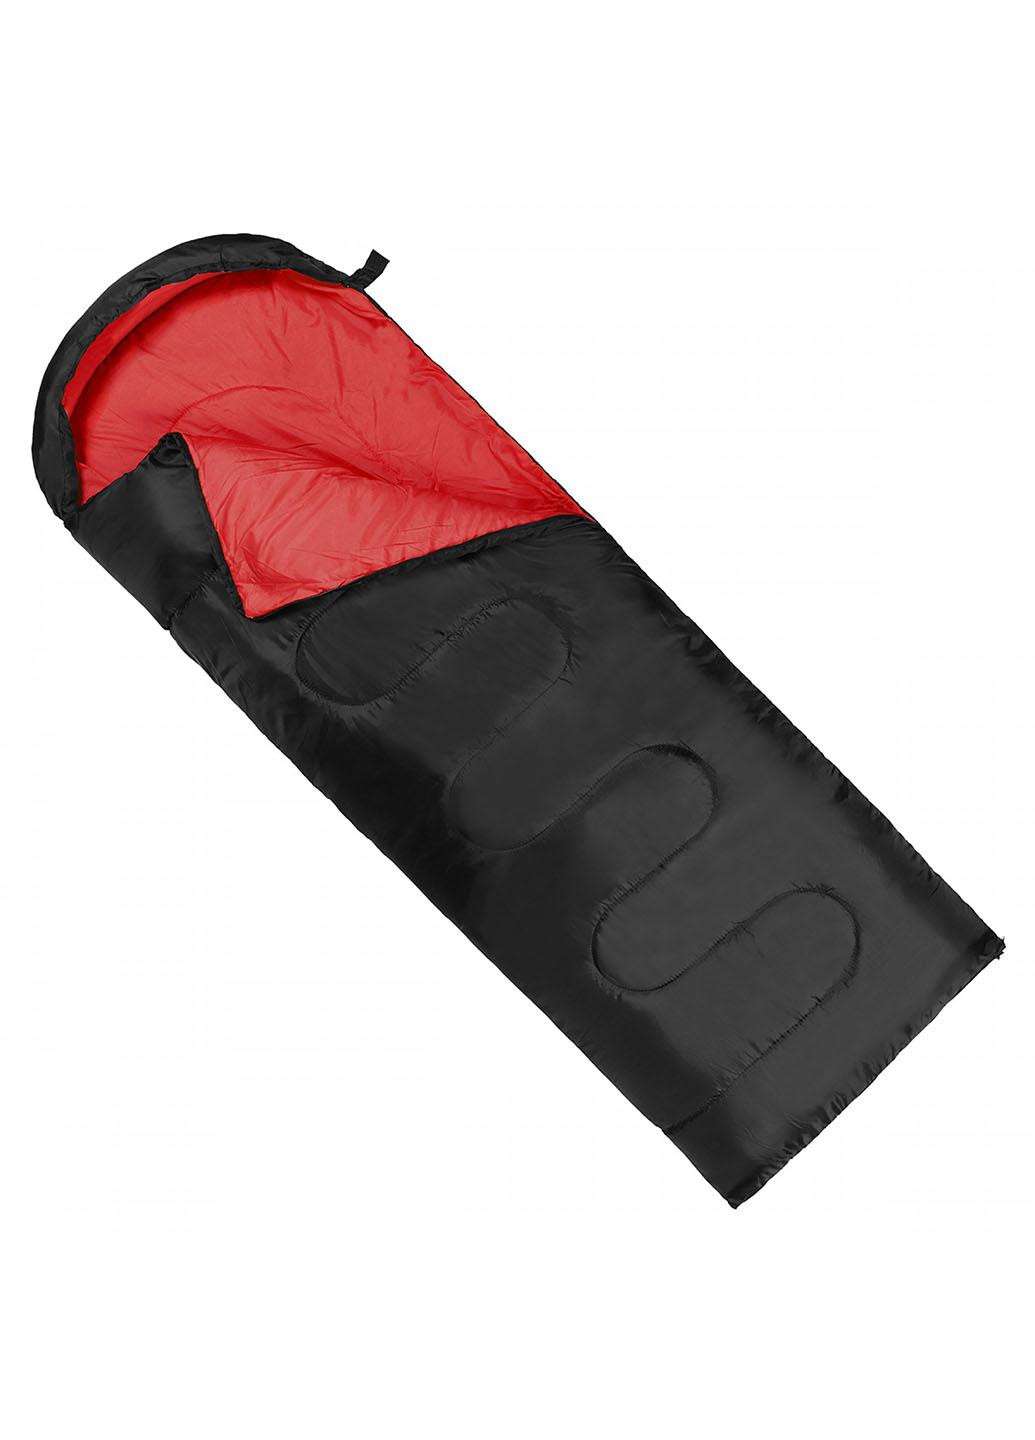 Спальный мешок (спальник) одеяло SV-CC0064 +2 ...+ 21°C L Black/Red SportVida (259749843)